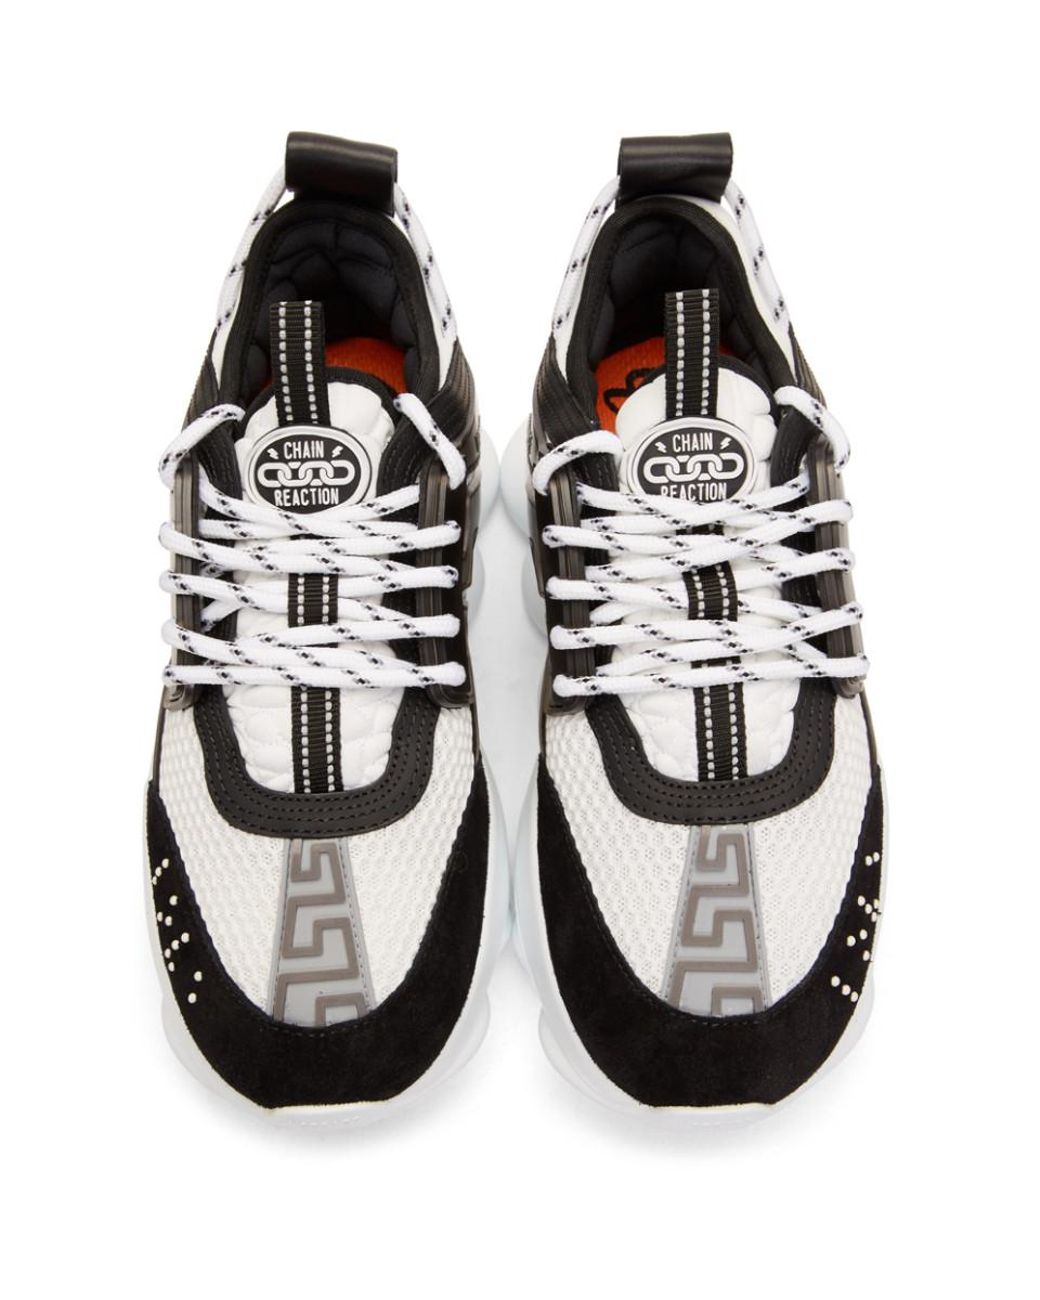 Versace Chain Reaction Medusa Mens Black White Sneakers Shoes -    White shoes sneakers, Black and white sneakers, Black and white man